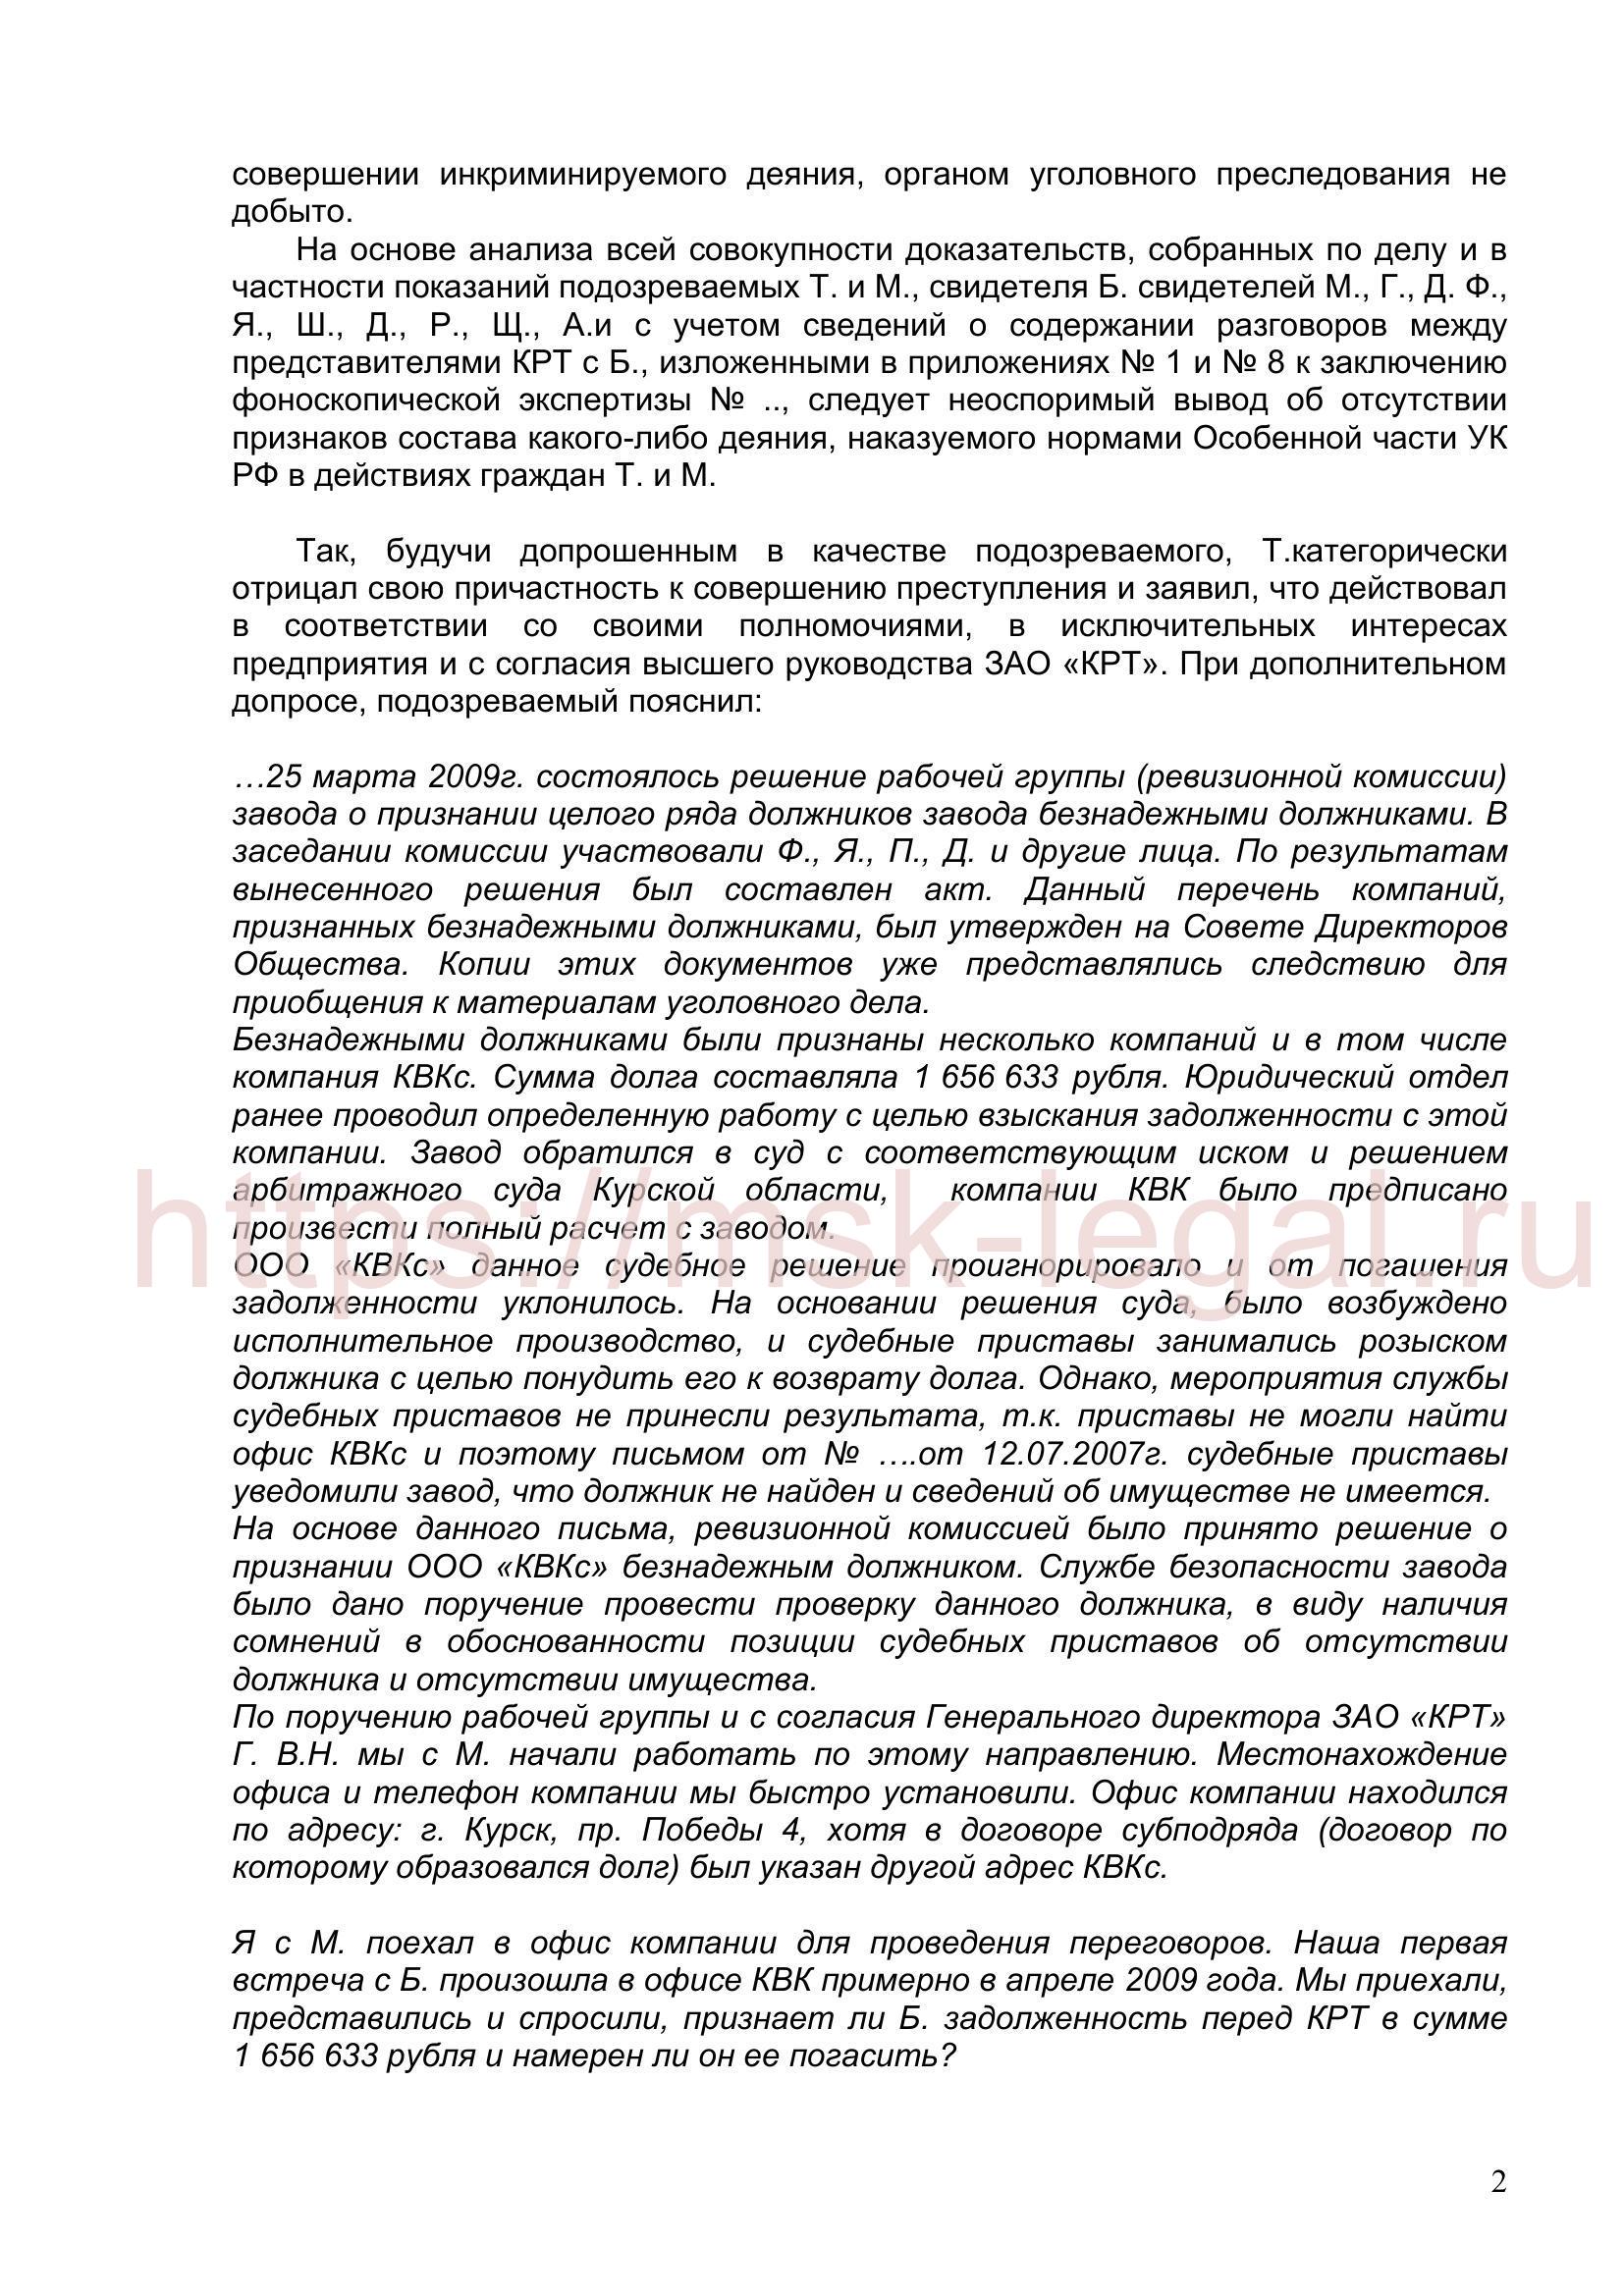 Ходатайство о прекращении уголовного дела по ст. 204 УК РФ на основании п. 2 ч. 1 ст. 24 УПК РФ